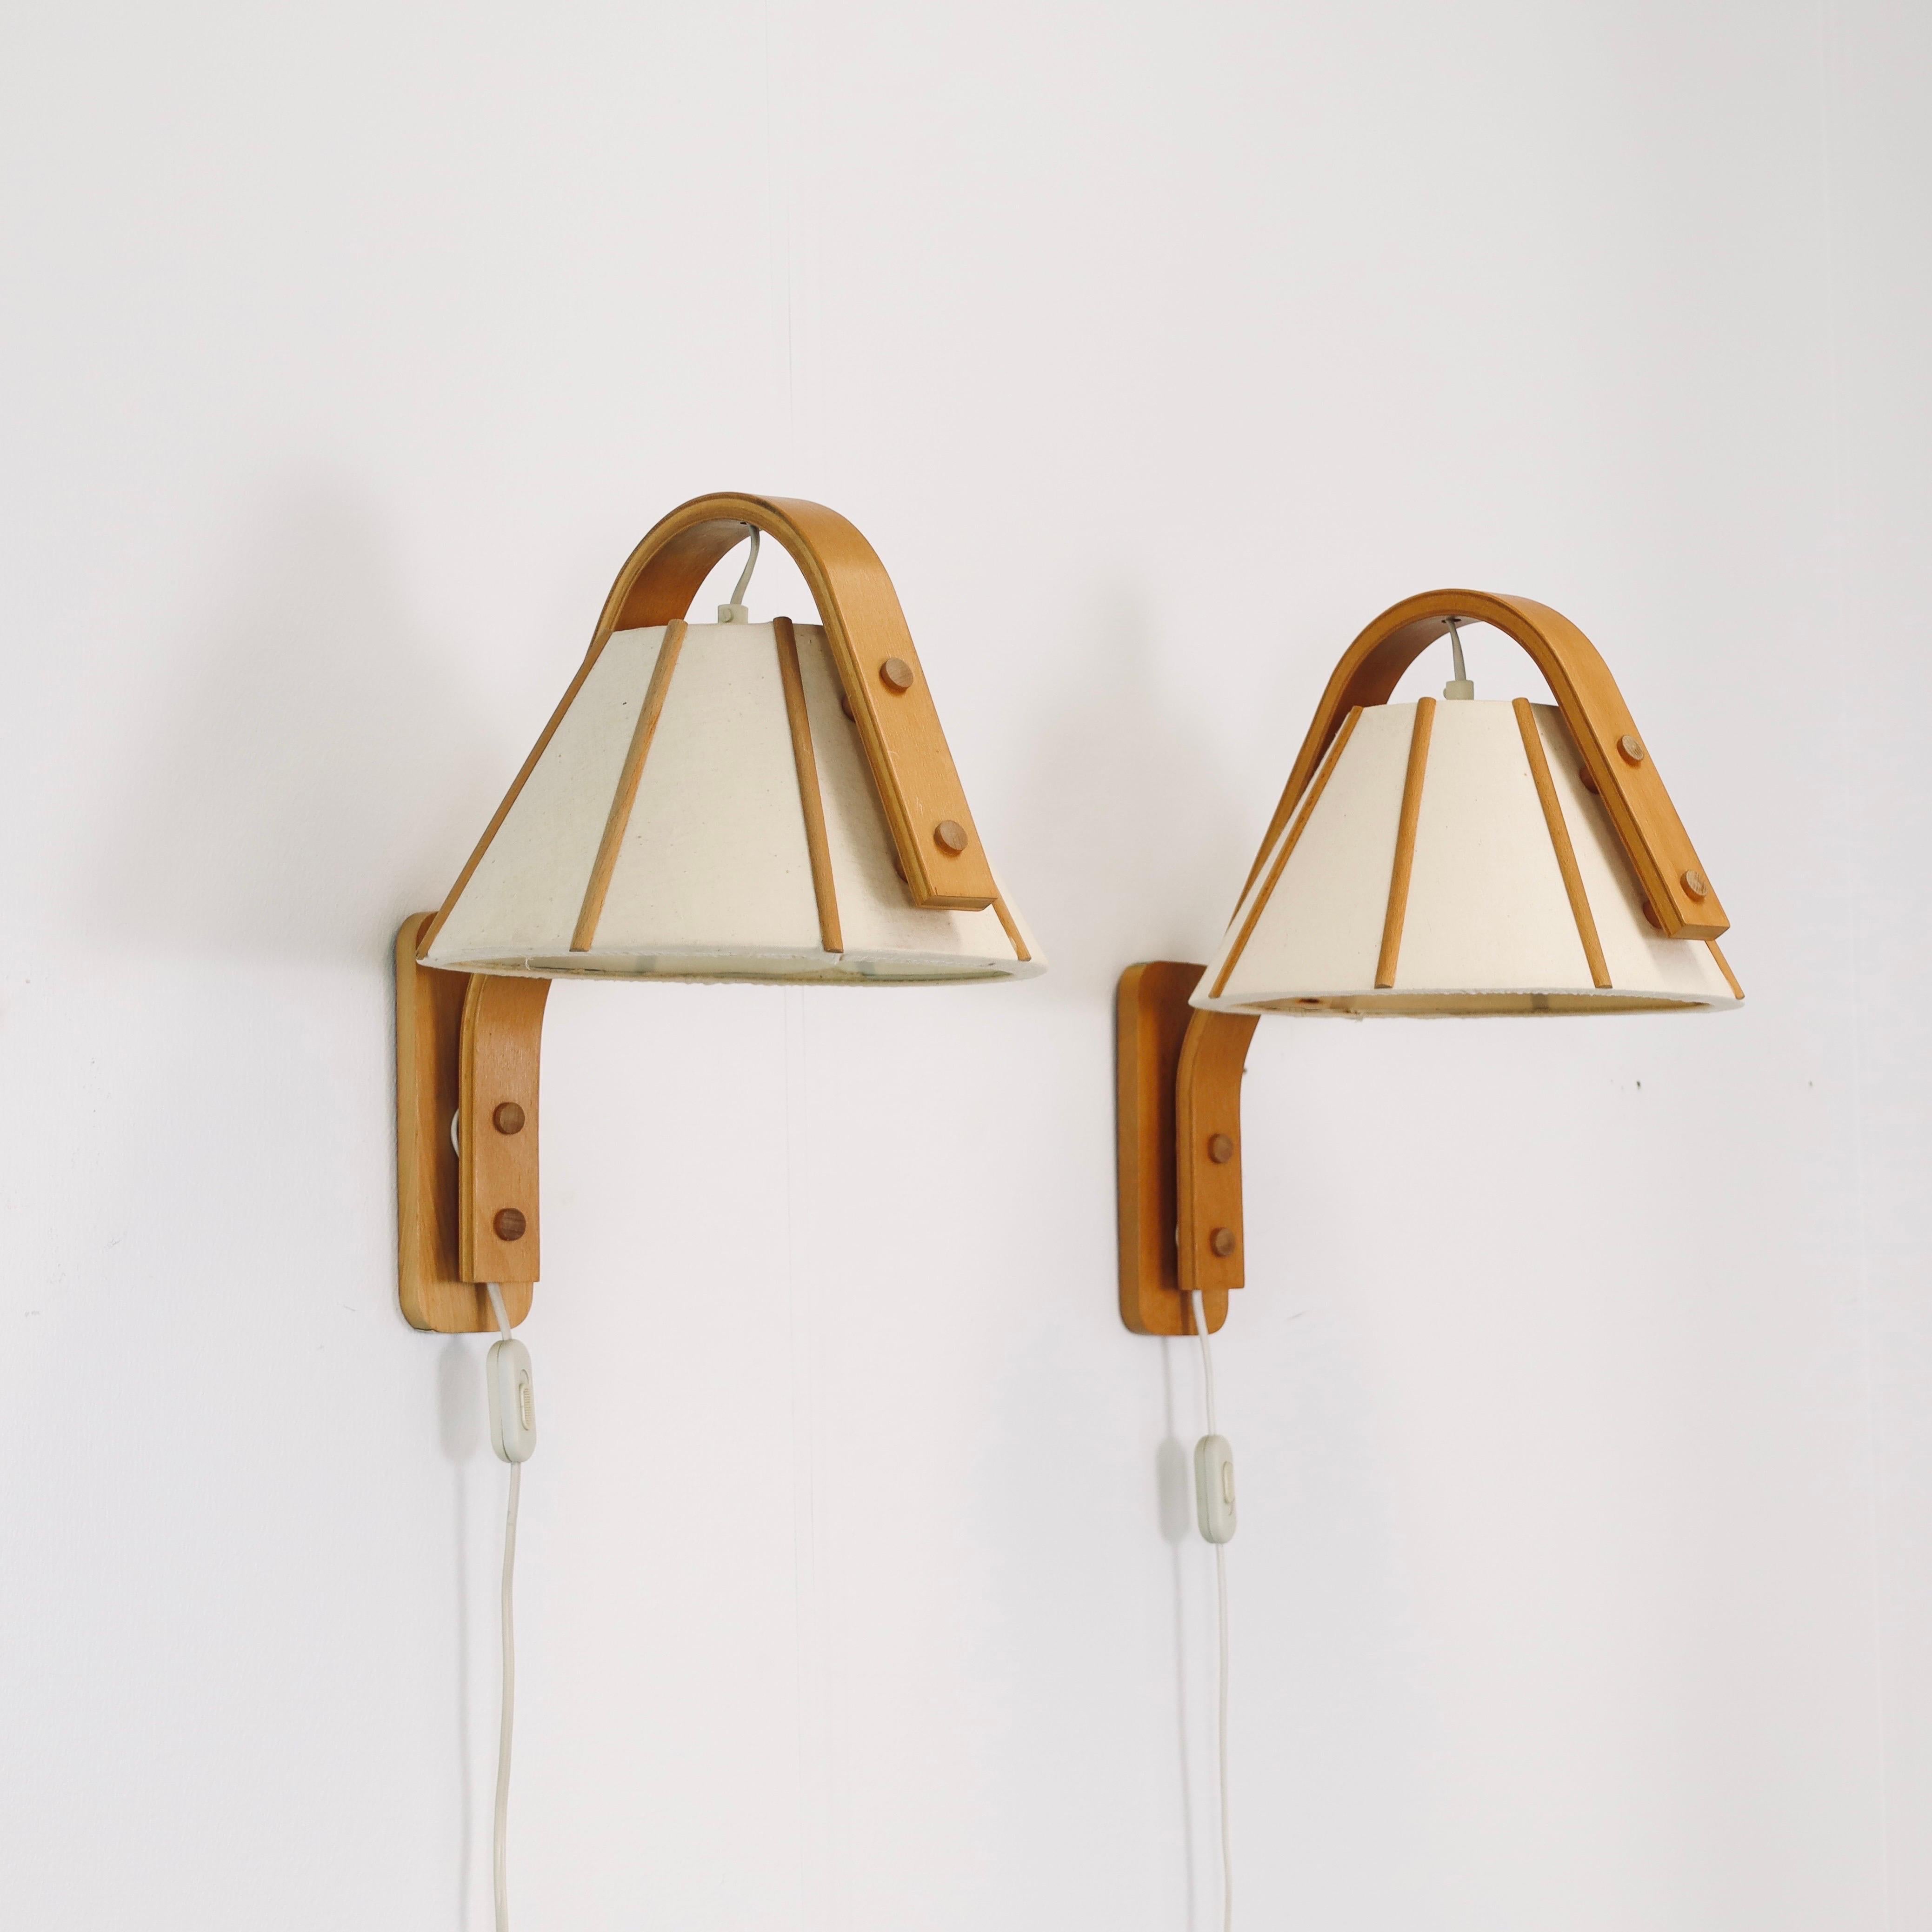 Ensemble d'appliques Modernes Scandinaves en bois de Beeche courbé, conçues par Jan Wickelgren dans les années 1970 pour Aneta Suède. L'ensemble est en très bon état vintage. Une touche nordique pour une belle maison.

* Un ensemble de deux (2)